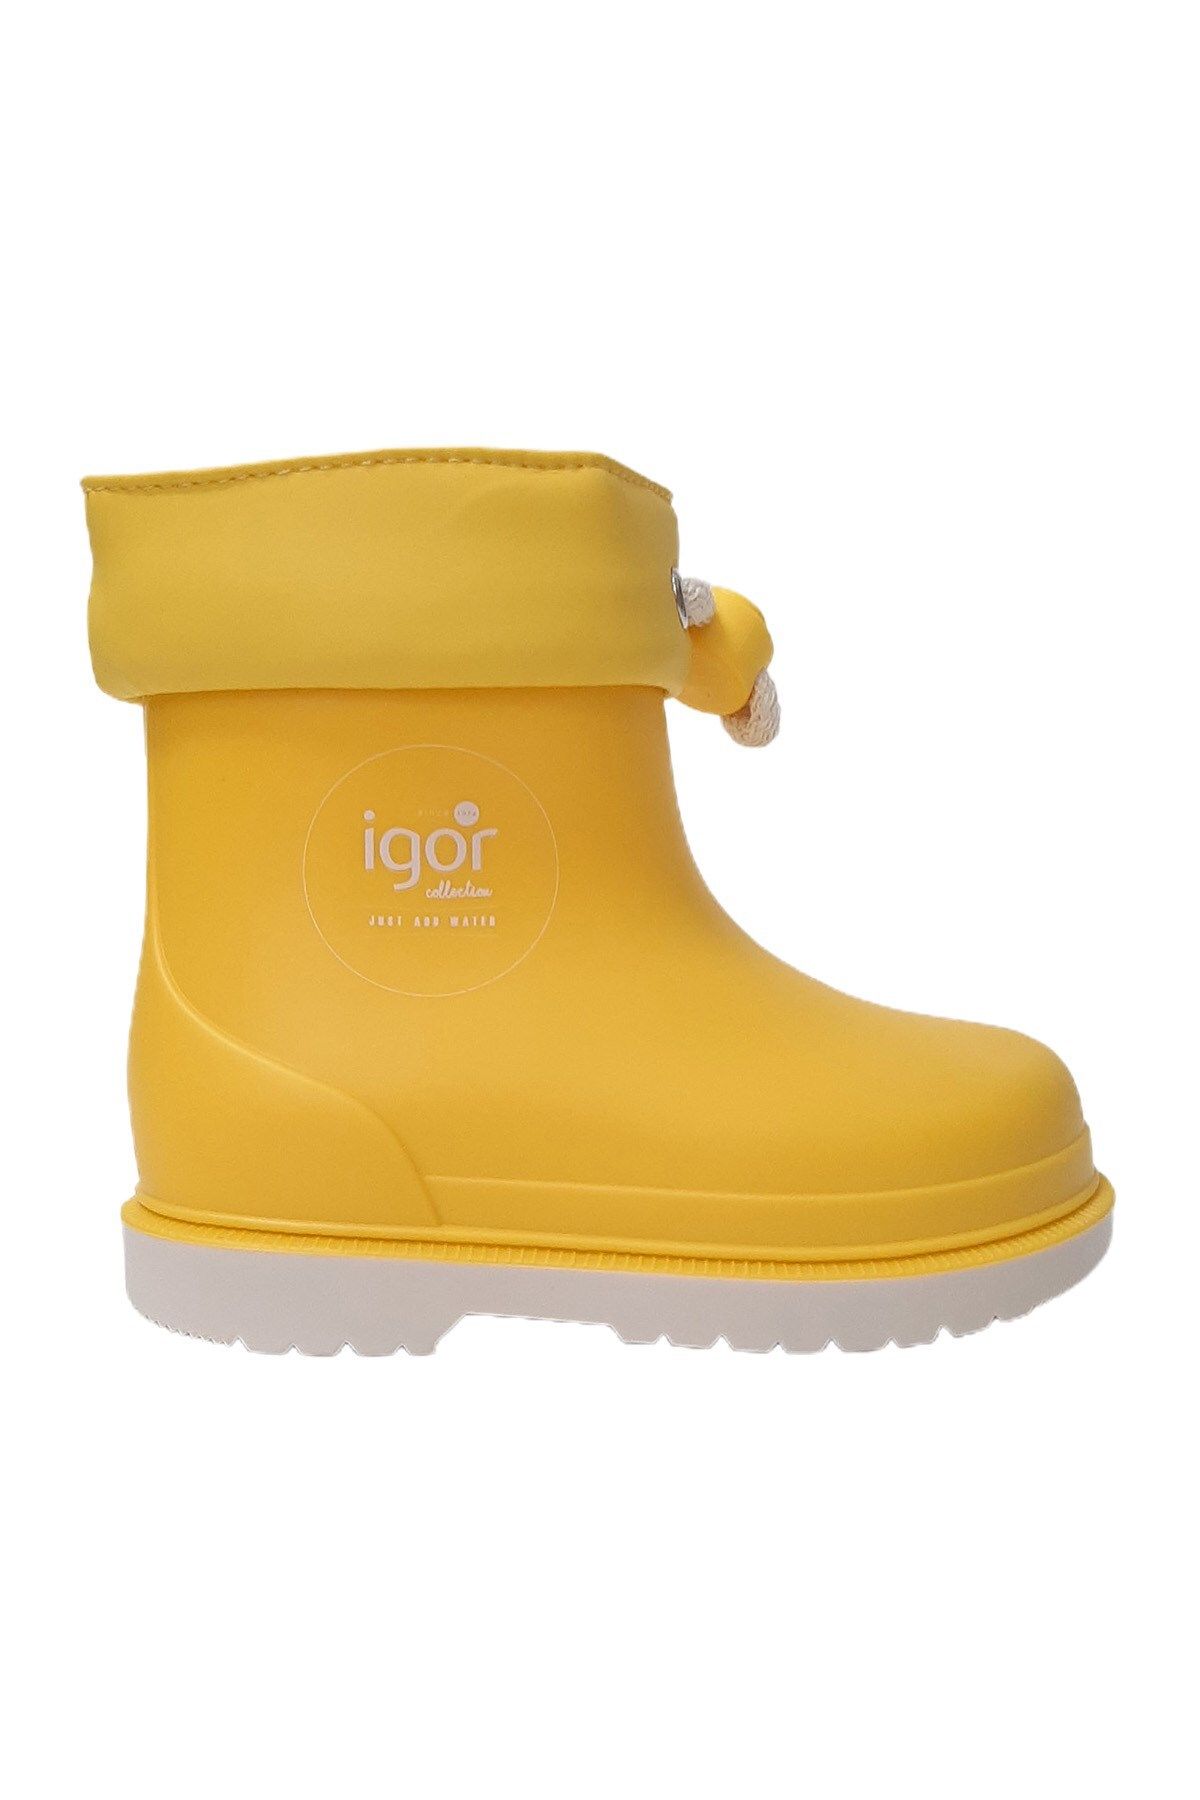 IGOR I?gor Bimbi Yağmur Çocuk Çizmesi Sarı